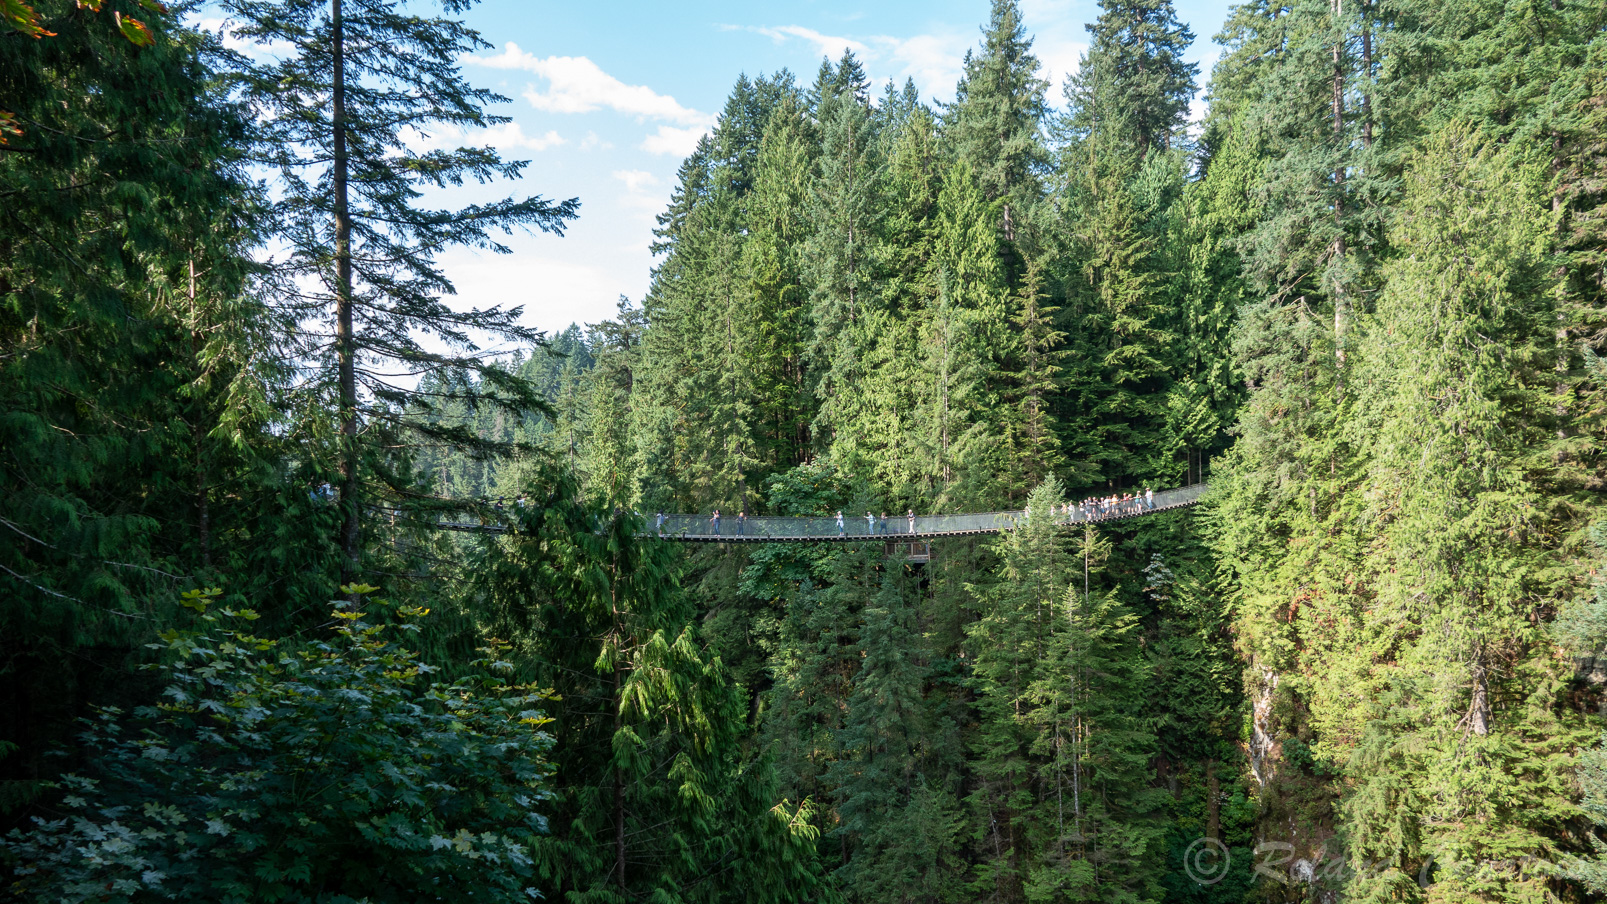 Capilano Suspension Bridge. A environ 10 kilomètres au nord de Vancouver, se trouve ce parc enfoui dans la nature, avec son pont suspendu et ses autres ponts accrochés aux séquoias.